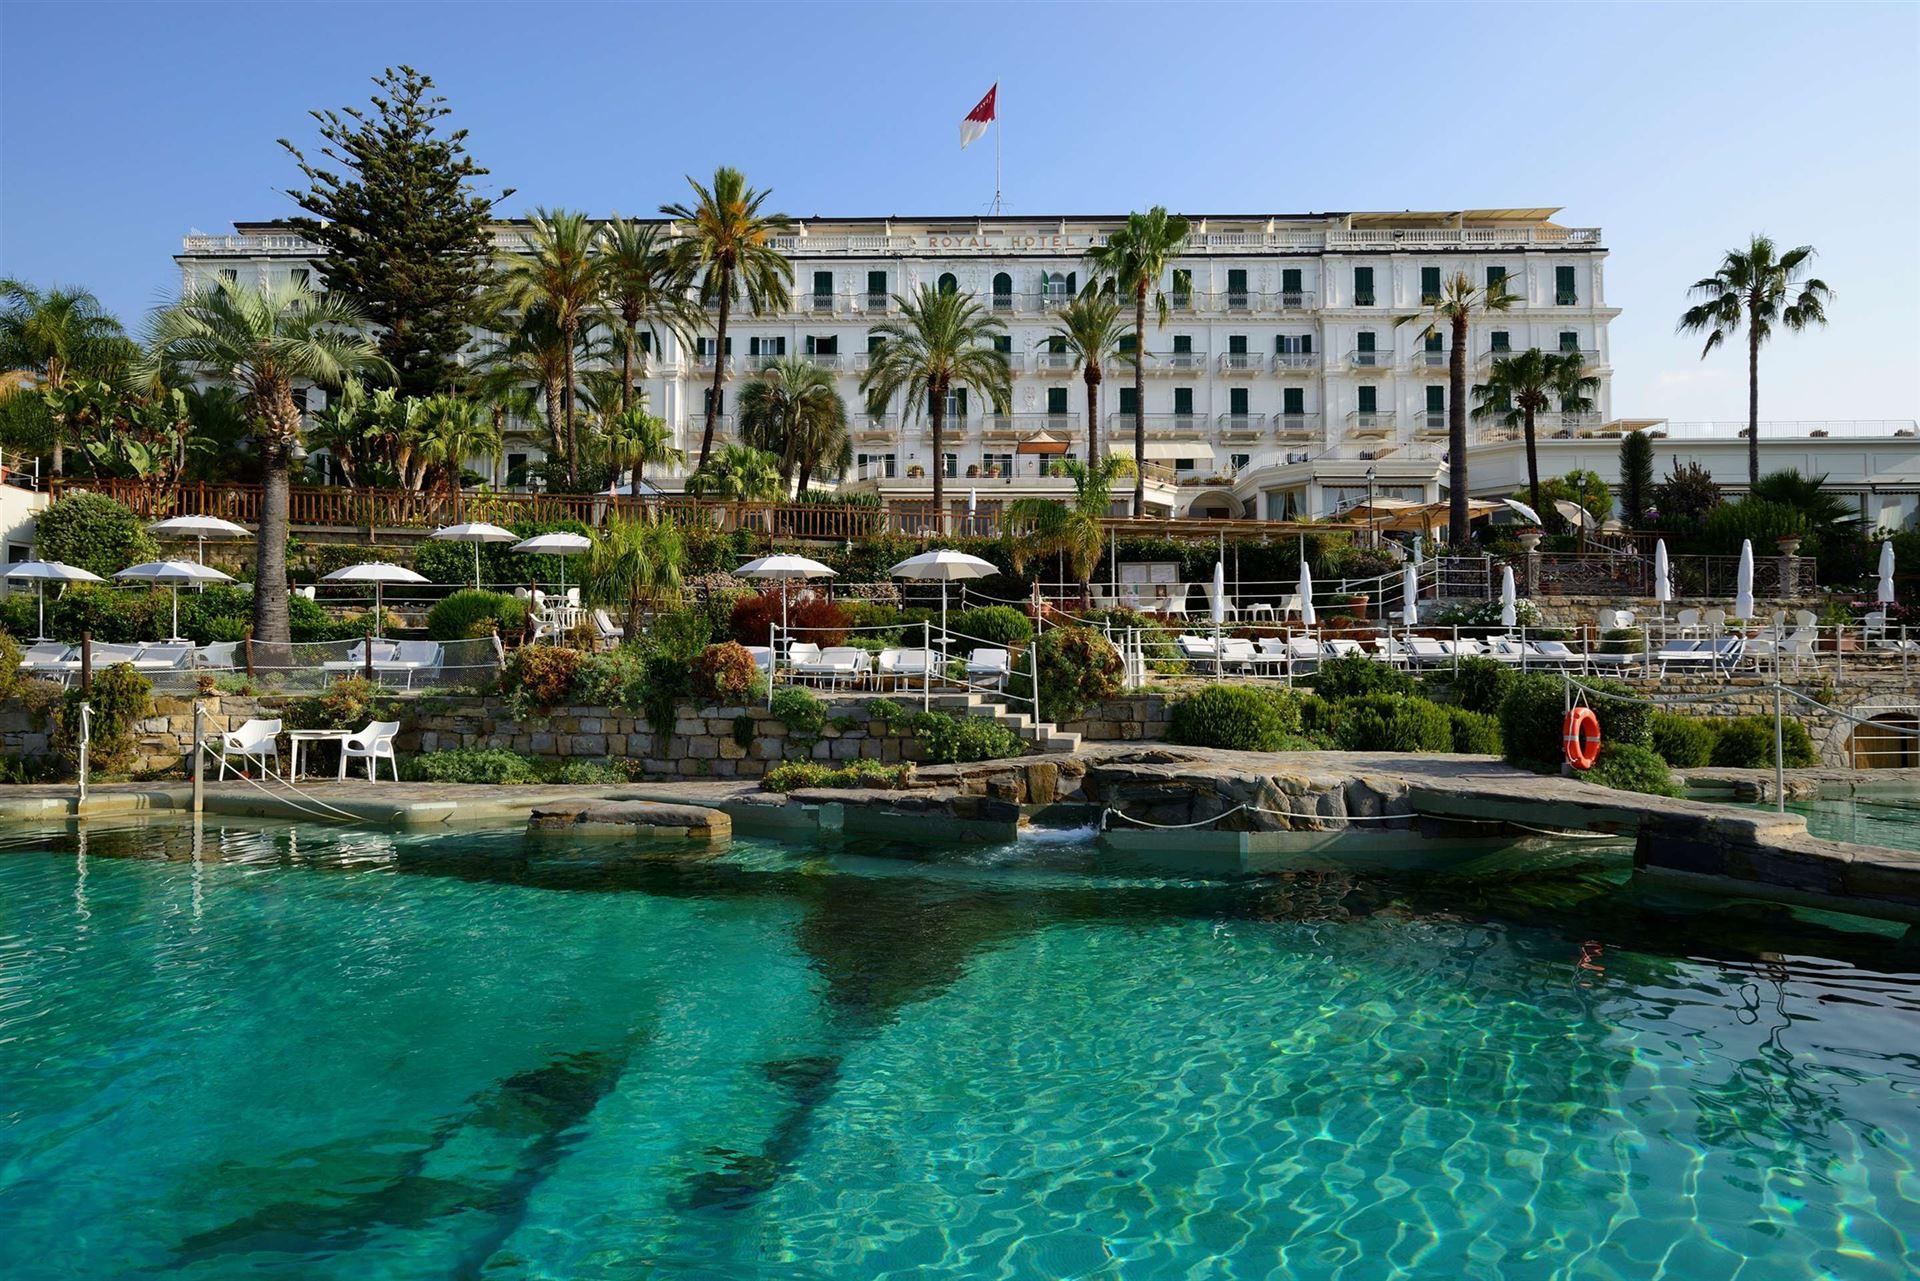 Royal Hotel Sanremo luxe hotel deals